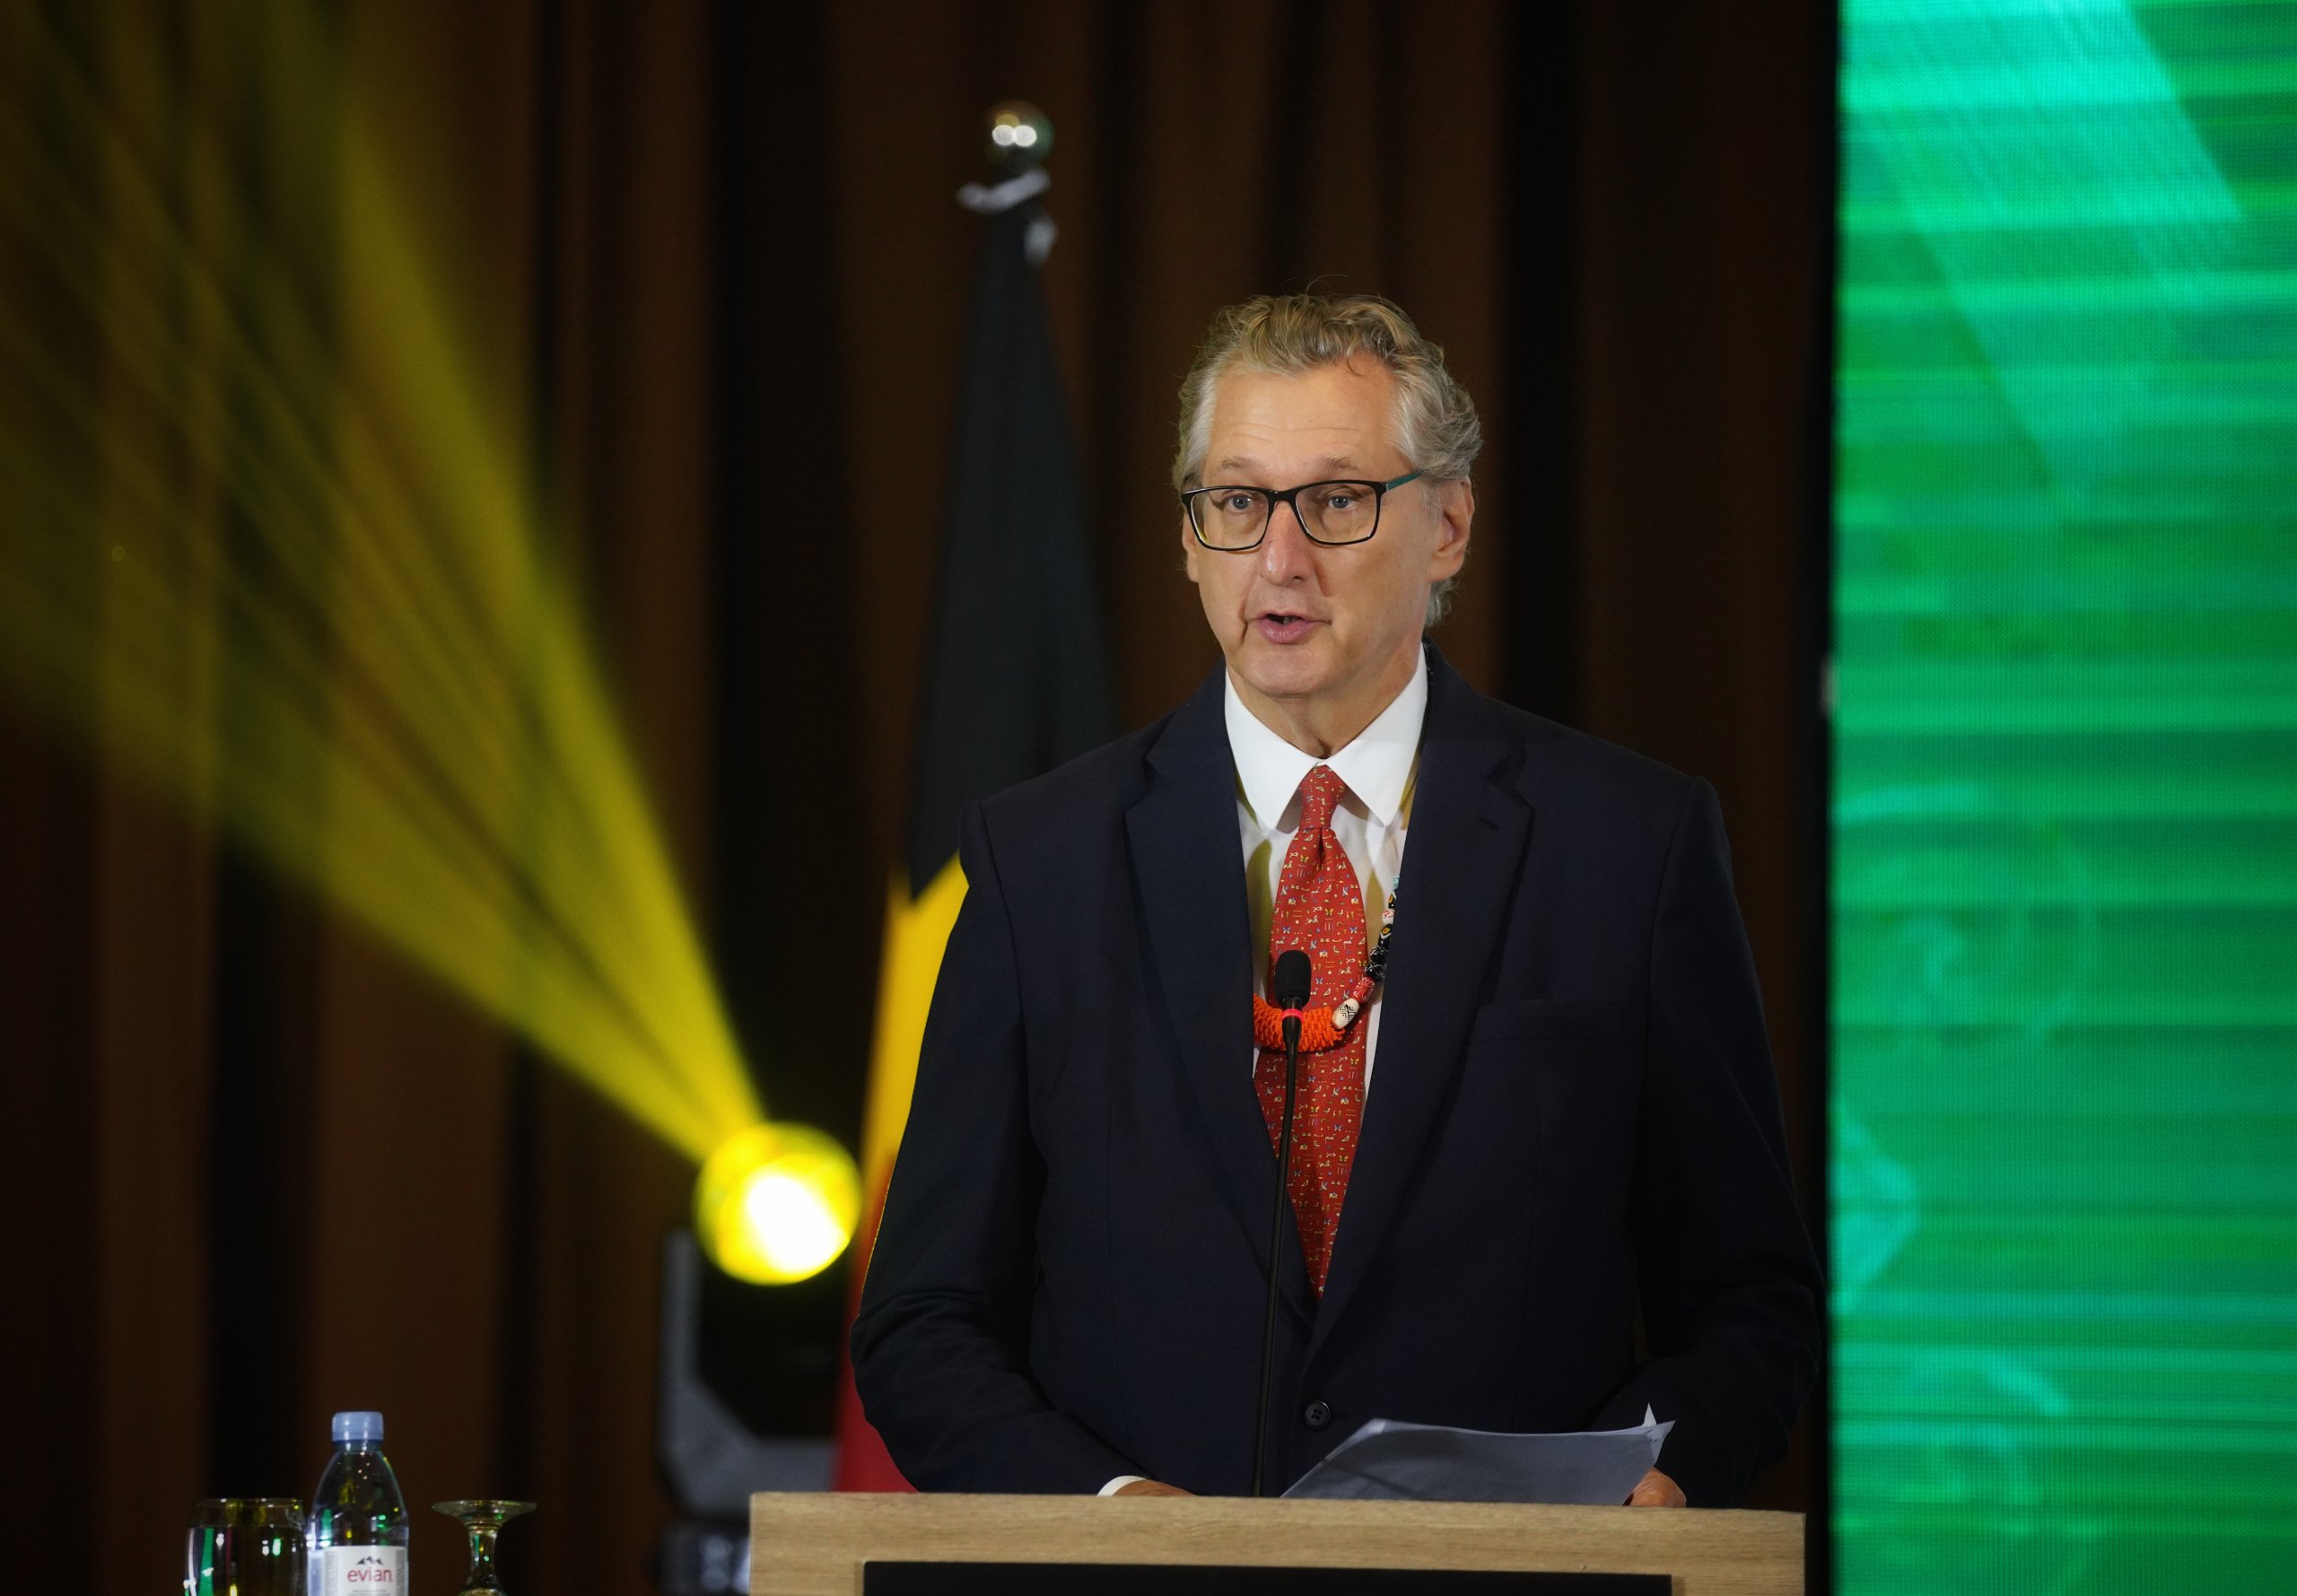 Het MoU is op het juiste moment getekend om de landbouwsector in Sarawak te hervormen, zegt de Nederlandse ambassadeur